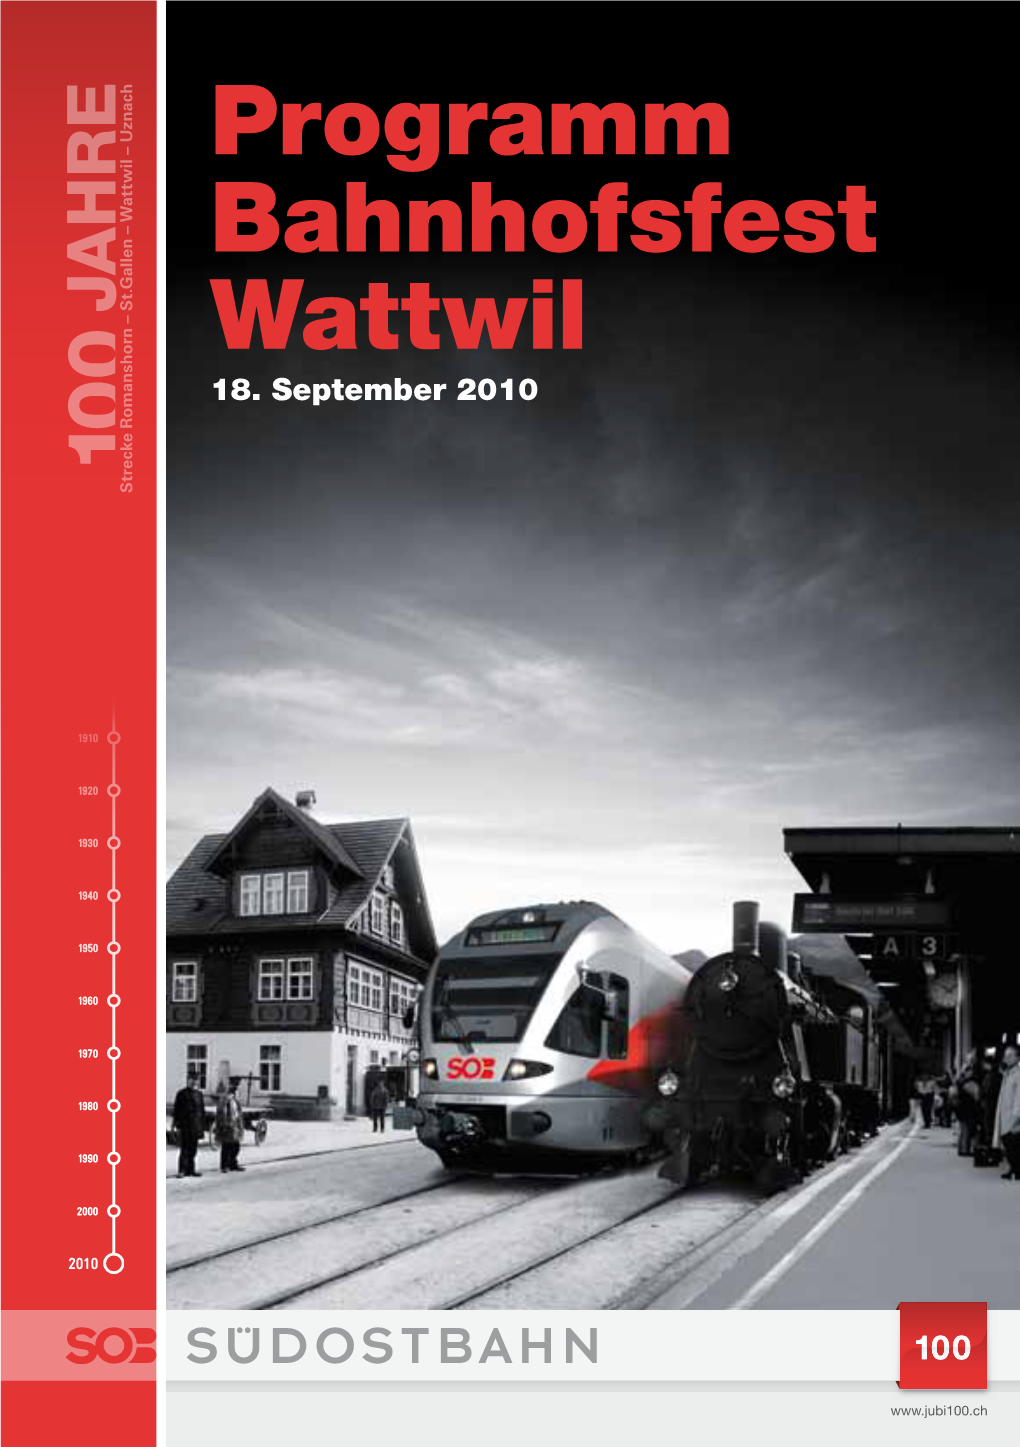 Programm Bahnhofsfest Wattwil